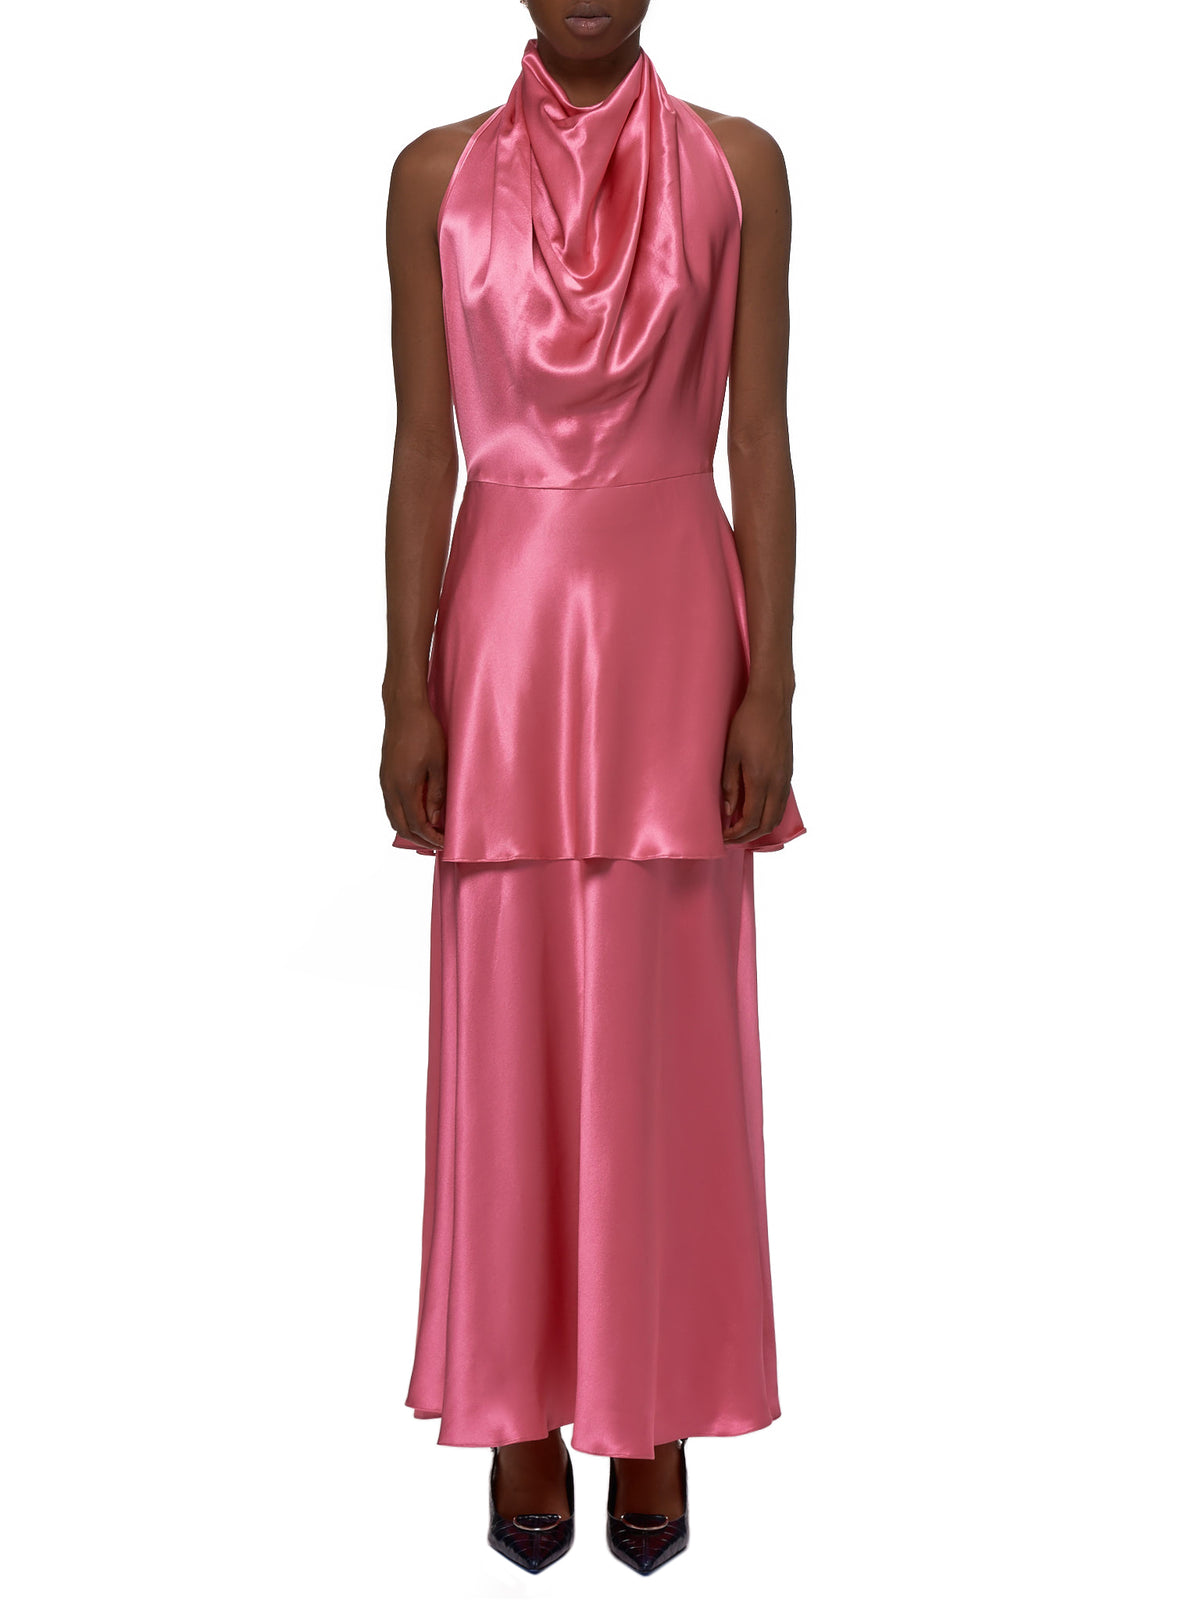 Rowen Rose Dress - Hlorenzo Front